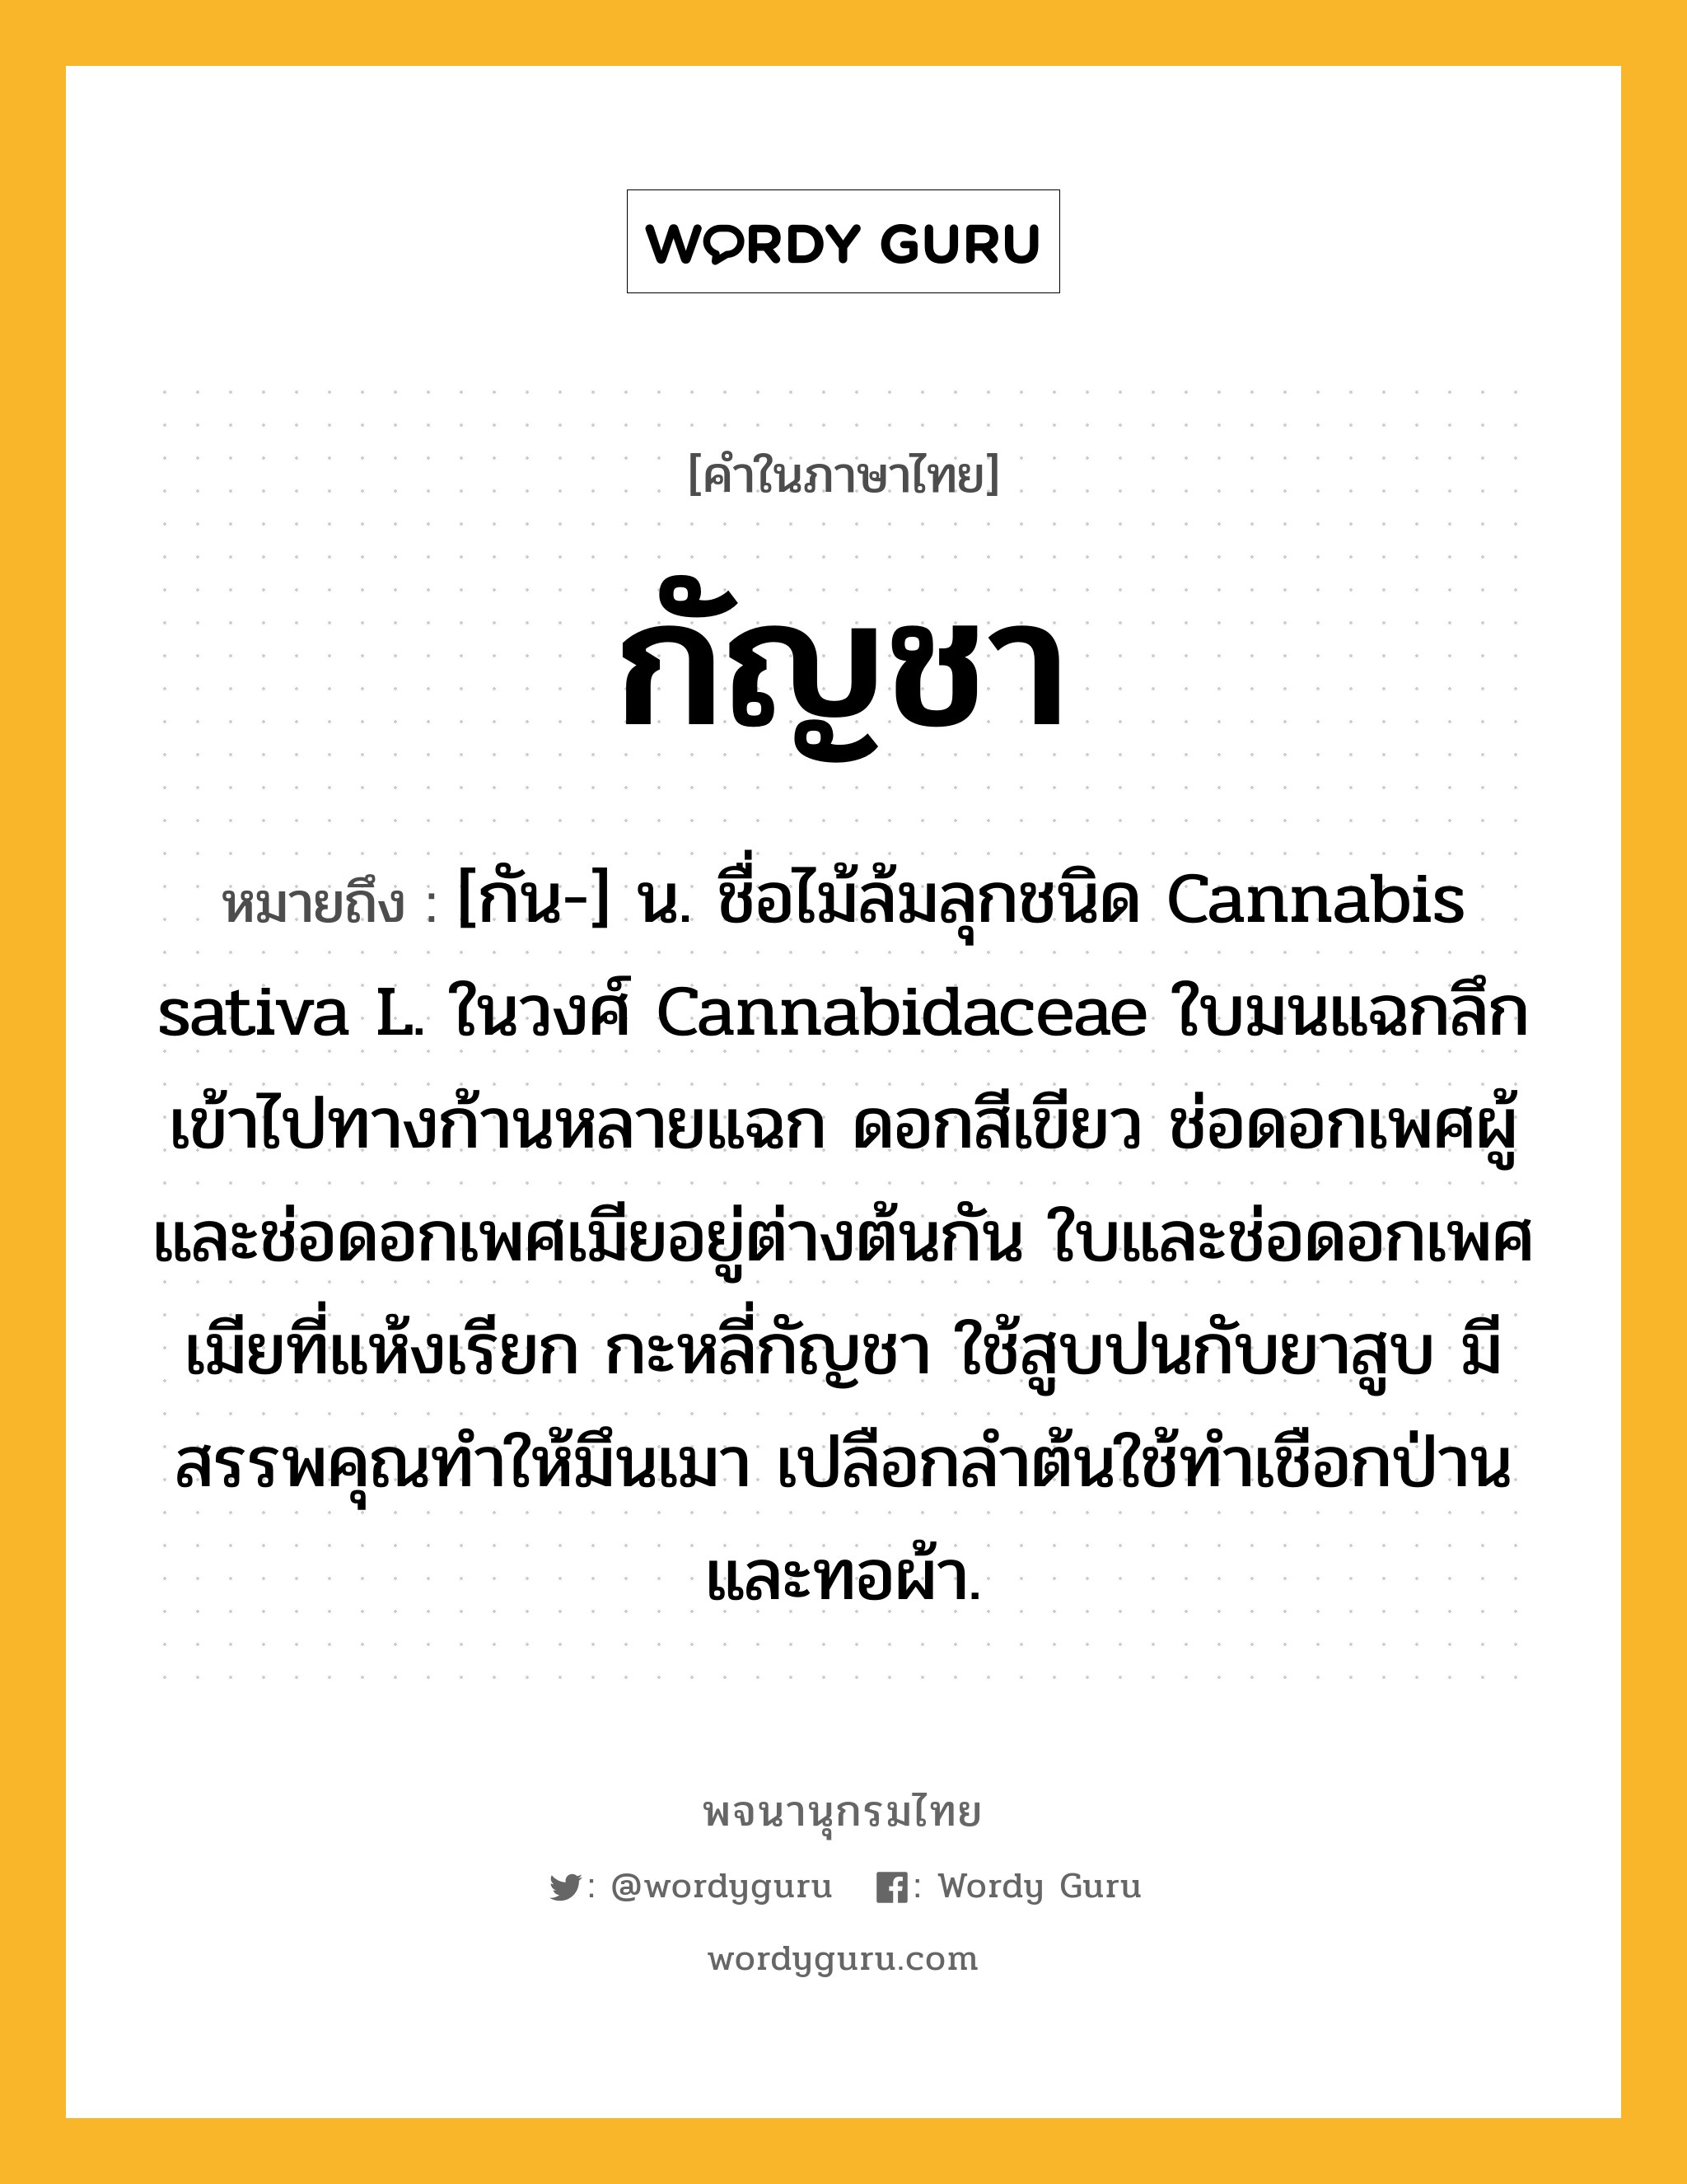 กัญชา หมายถึงอะไร?, คำในภาษาไทย กัญชา หมายถึง [กัน-] น. ชื่อไม้ล้มลุกชนิด Cannabis sativa L. ในวงศ์ Cannabidaceae ใบมนแฉกลึกเข้าไปทางก้านหลายแฉก ดอกสีเขียว ช่อดอกเพศผู้และช่อดอกเพศเมียอยู่ต่างต้นกัน ใบและช่อดอกเพศเมียที่แห้งเรียก กะหลี่กัญชา ใช้สูบปนกับยาสูบ มีสรรพคุณทําให้มึนเมา เปลือกลําต้นใช้ทําเชือกป่าน และทอผ้า.